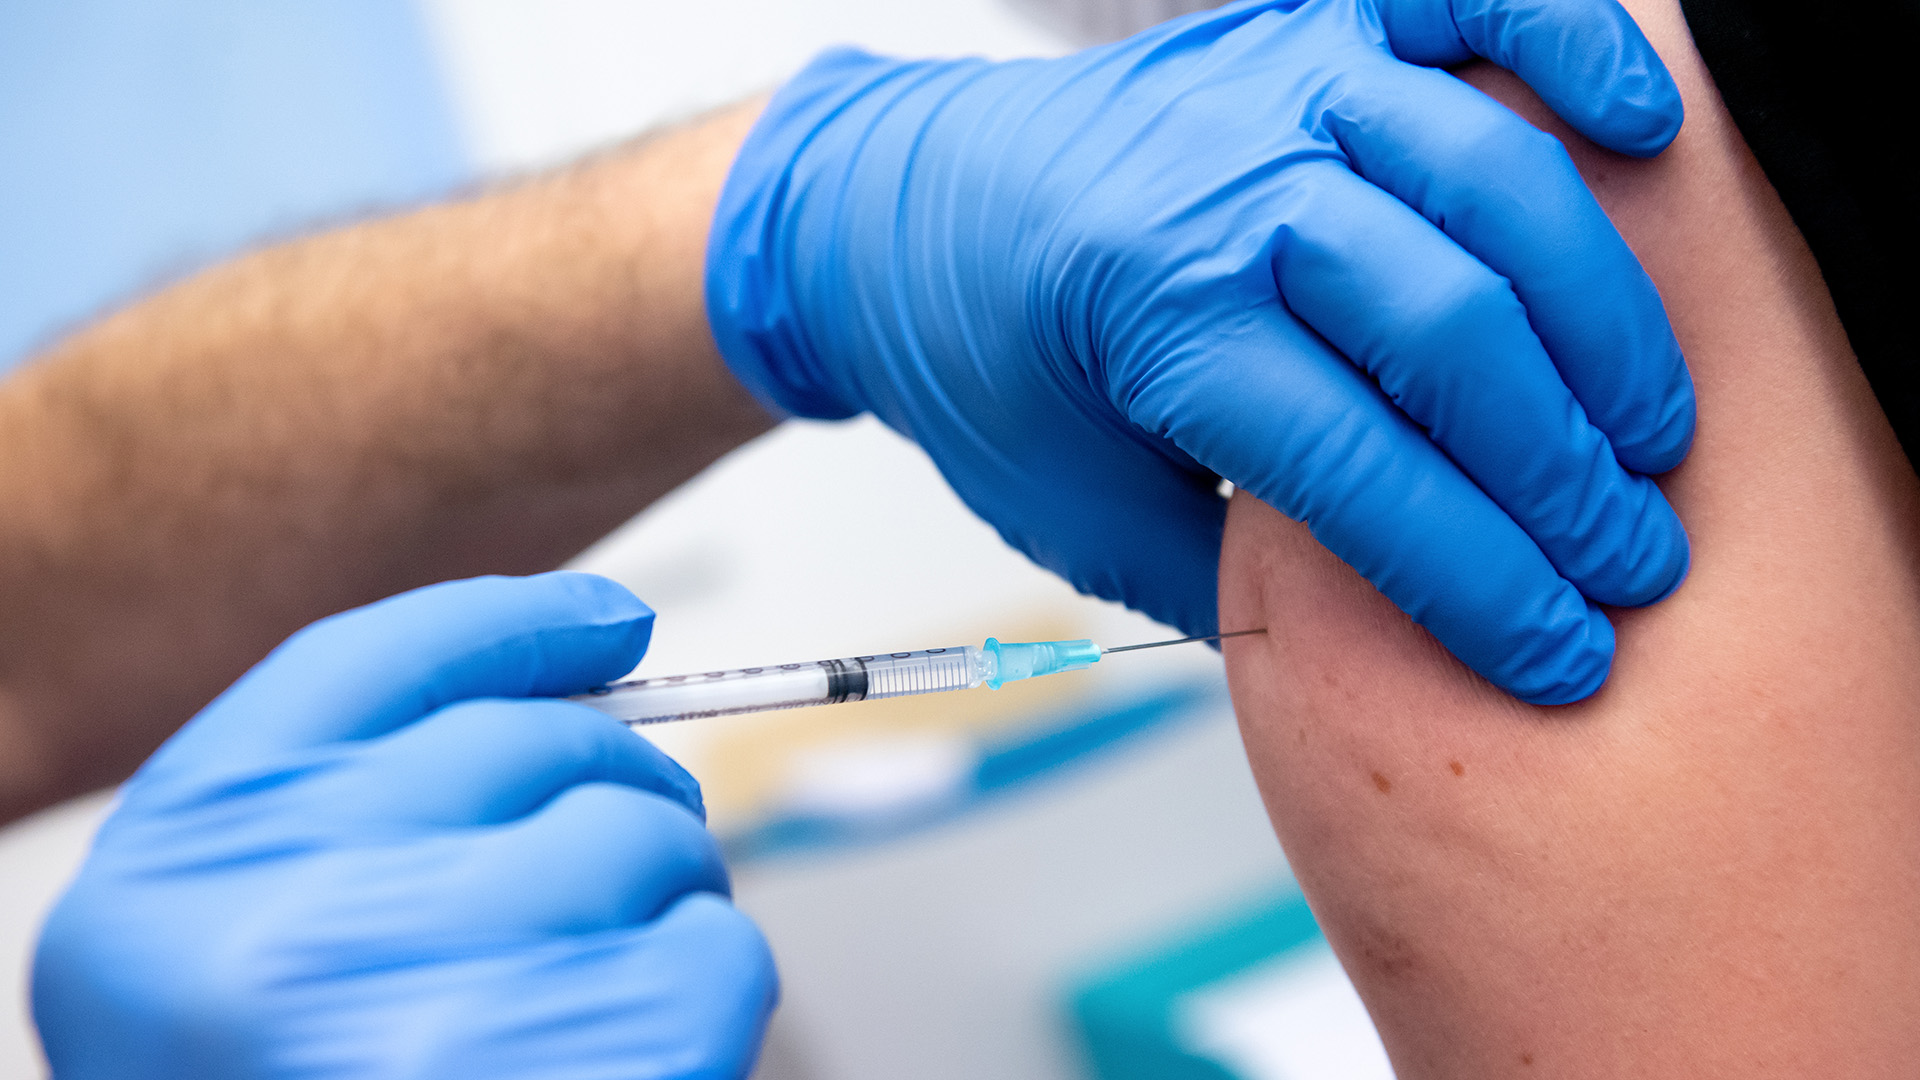 Debatte über Impfpflicht: Aktuell nicht hilfreich, langfristig schon?